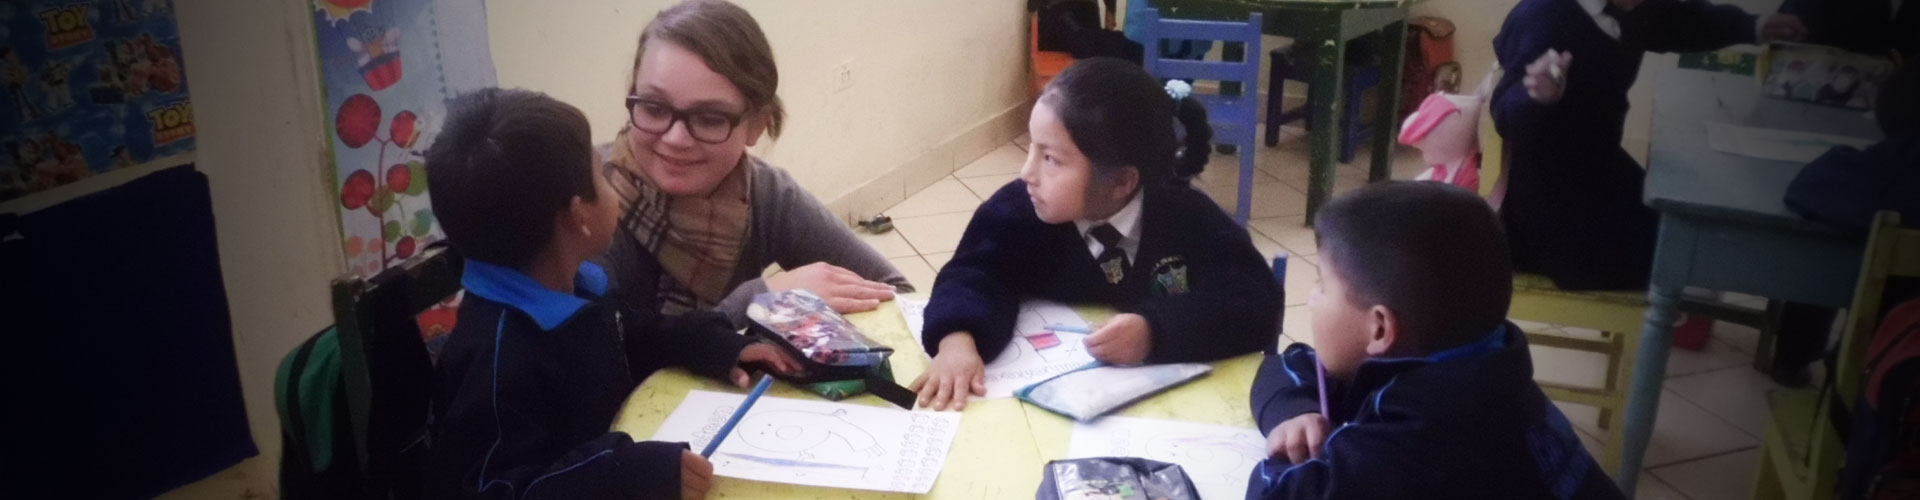 Voluntário ensinando inglês em Cusco, Peru